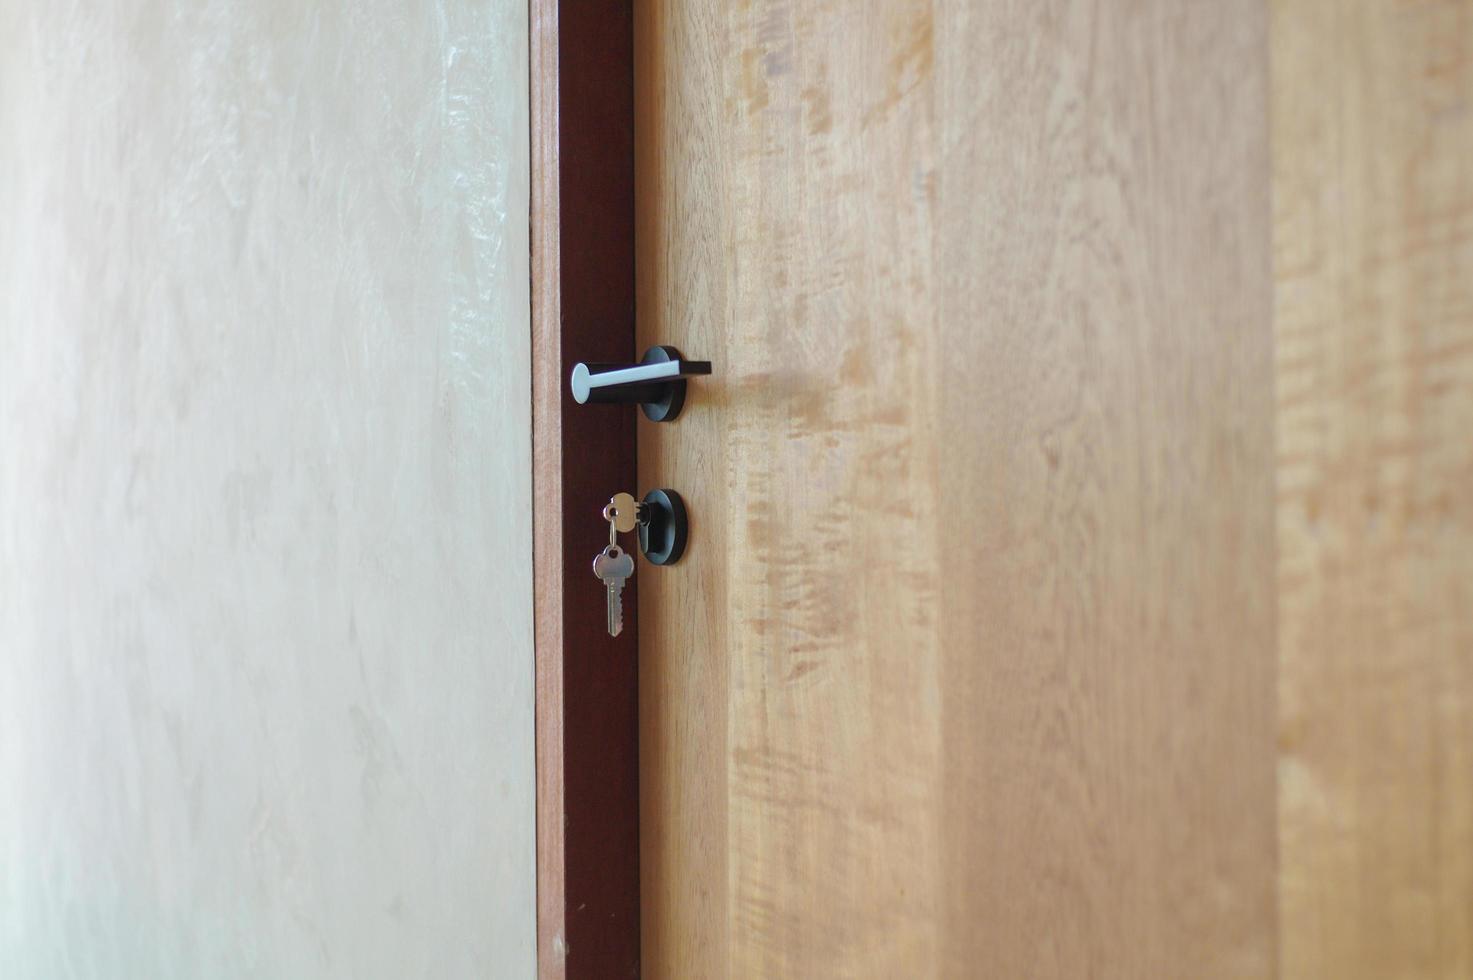 foco seletivo no estilo moderno da maçaneta da porta de madeira com as chaves penduradas na fechadura foto